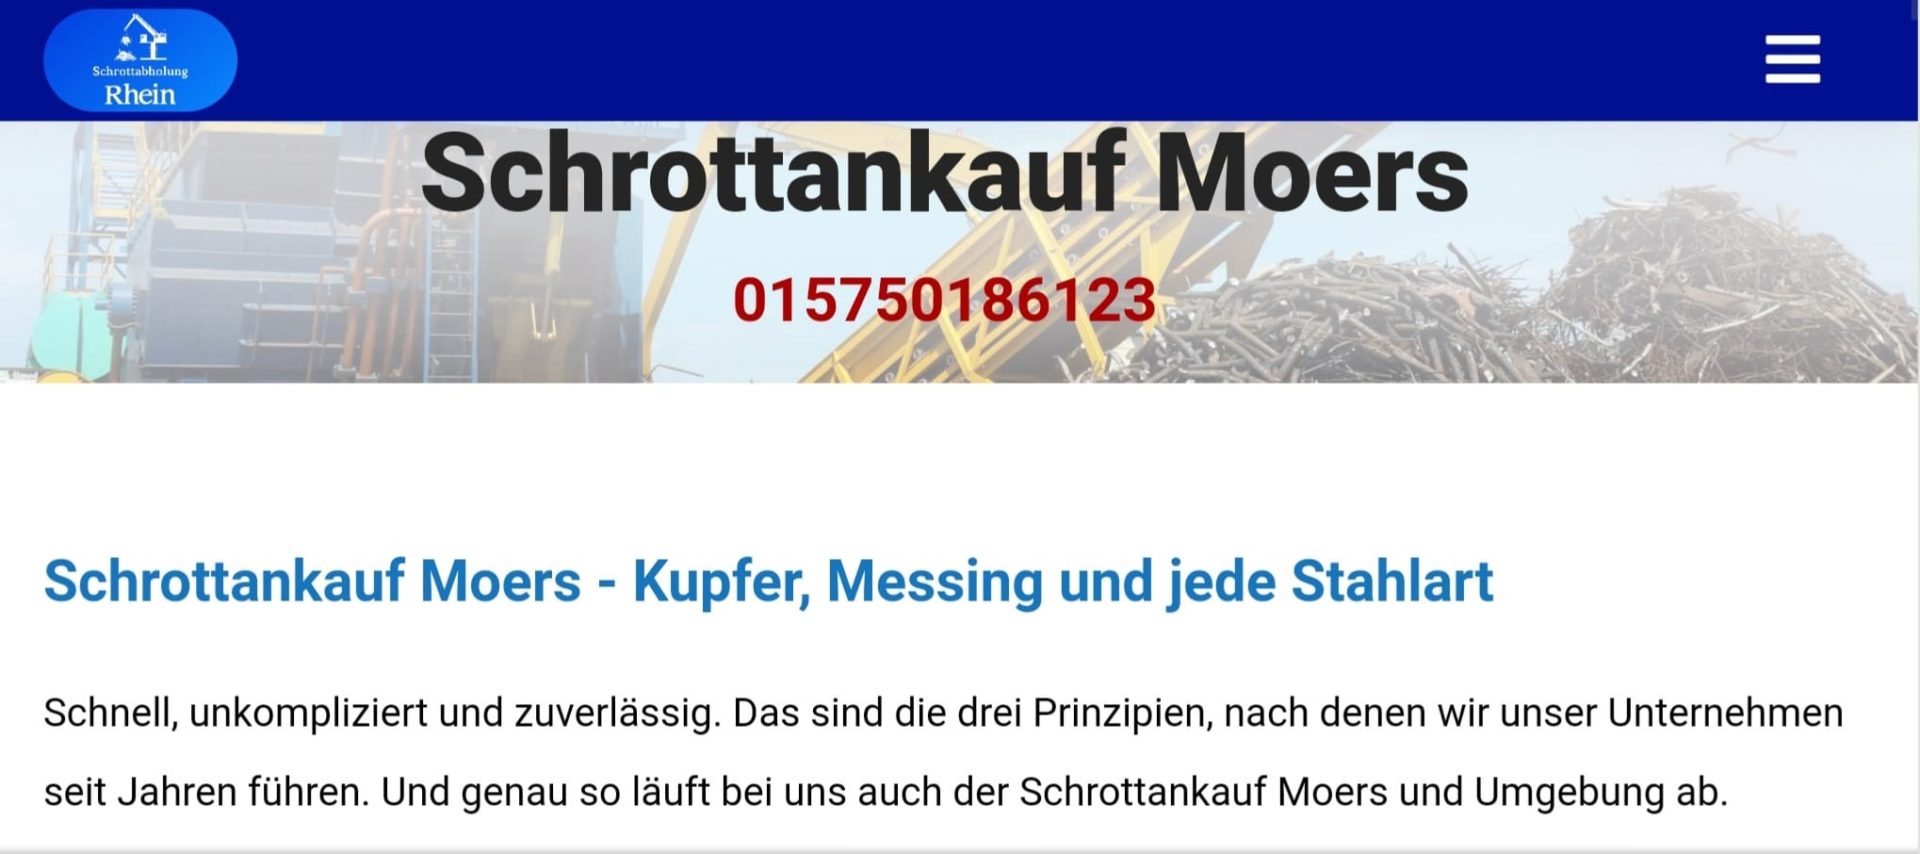 Schrottankauf Moers-5b556312